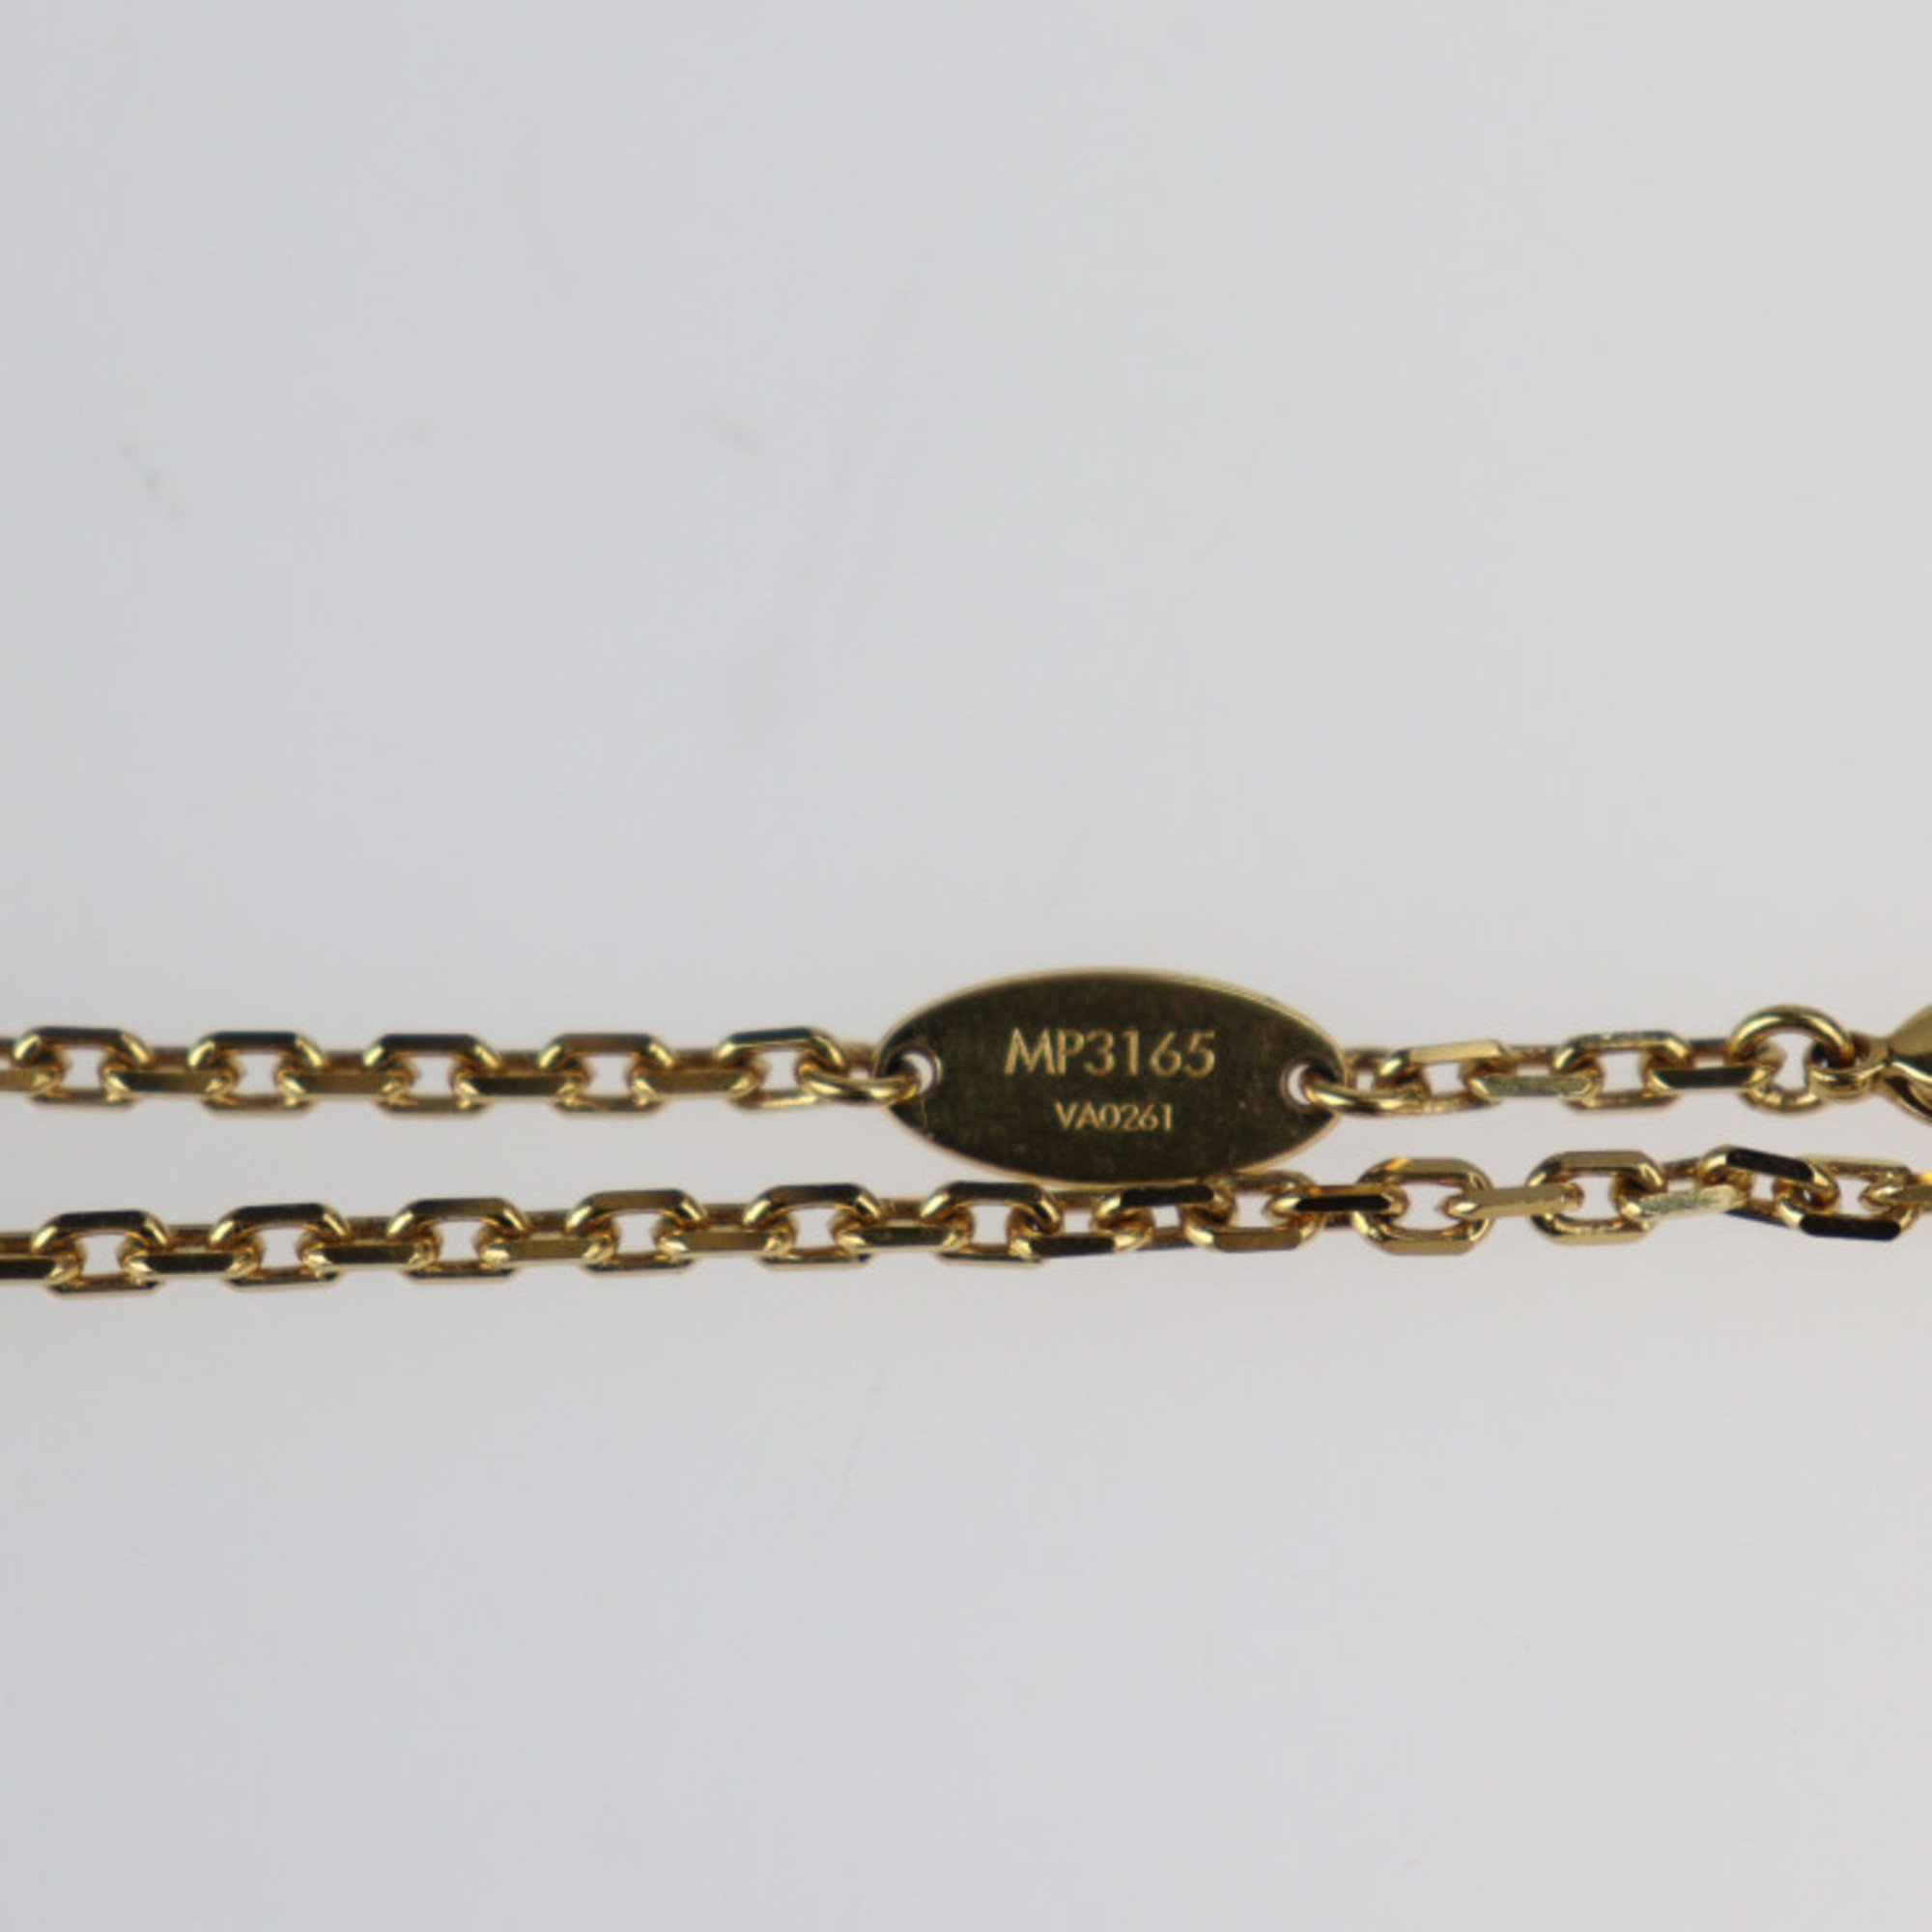 LOUIS VUITTON Louis Vuitton Broche Pandantif Cle Necklace MP3165 Metal Hawk Eye Stone Resin Gold Green Black Key Motif Pendant Brooch